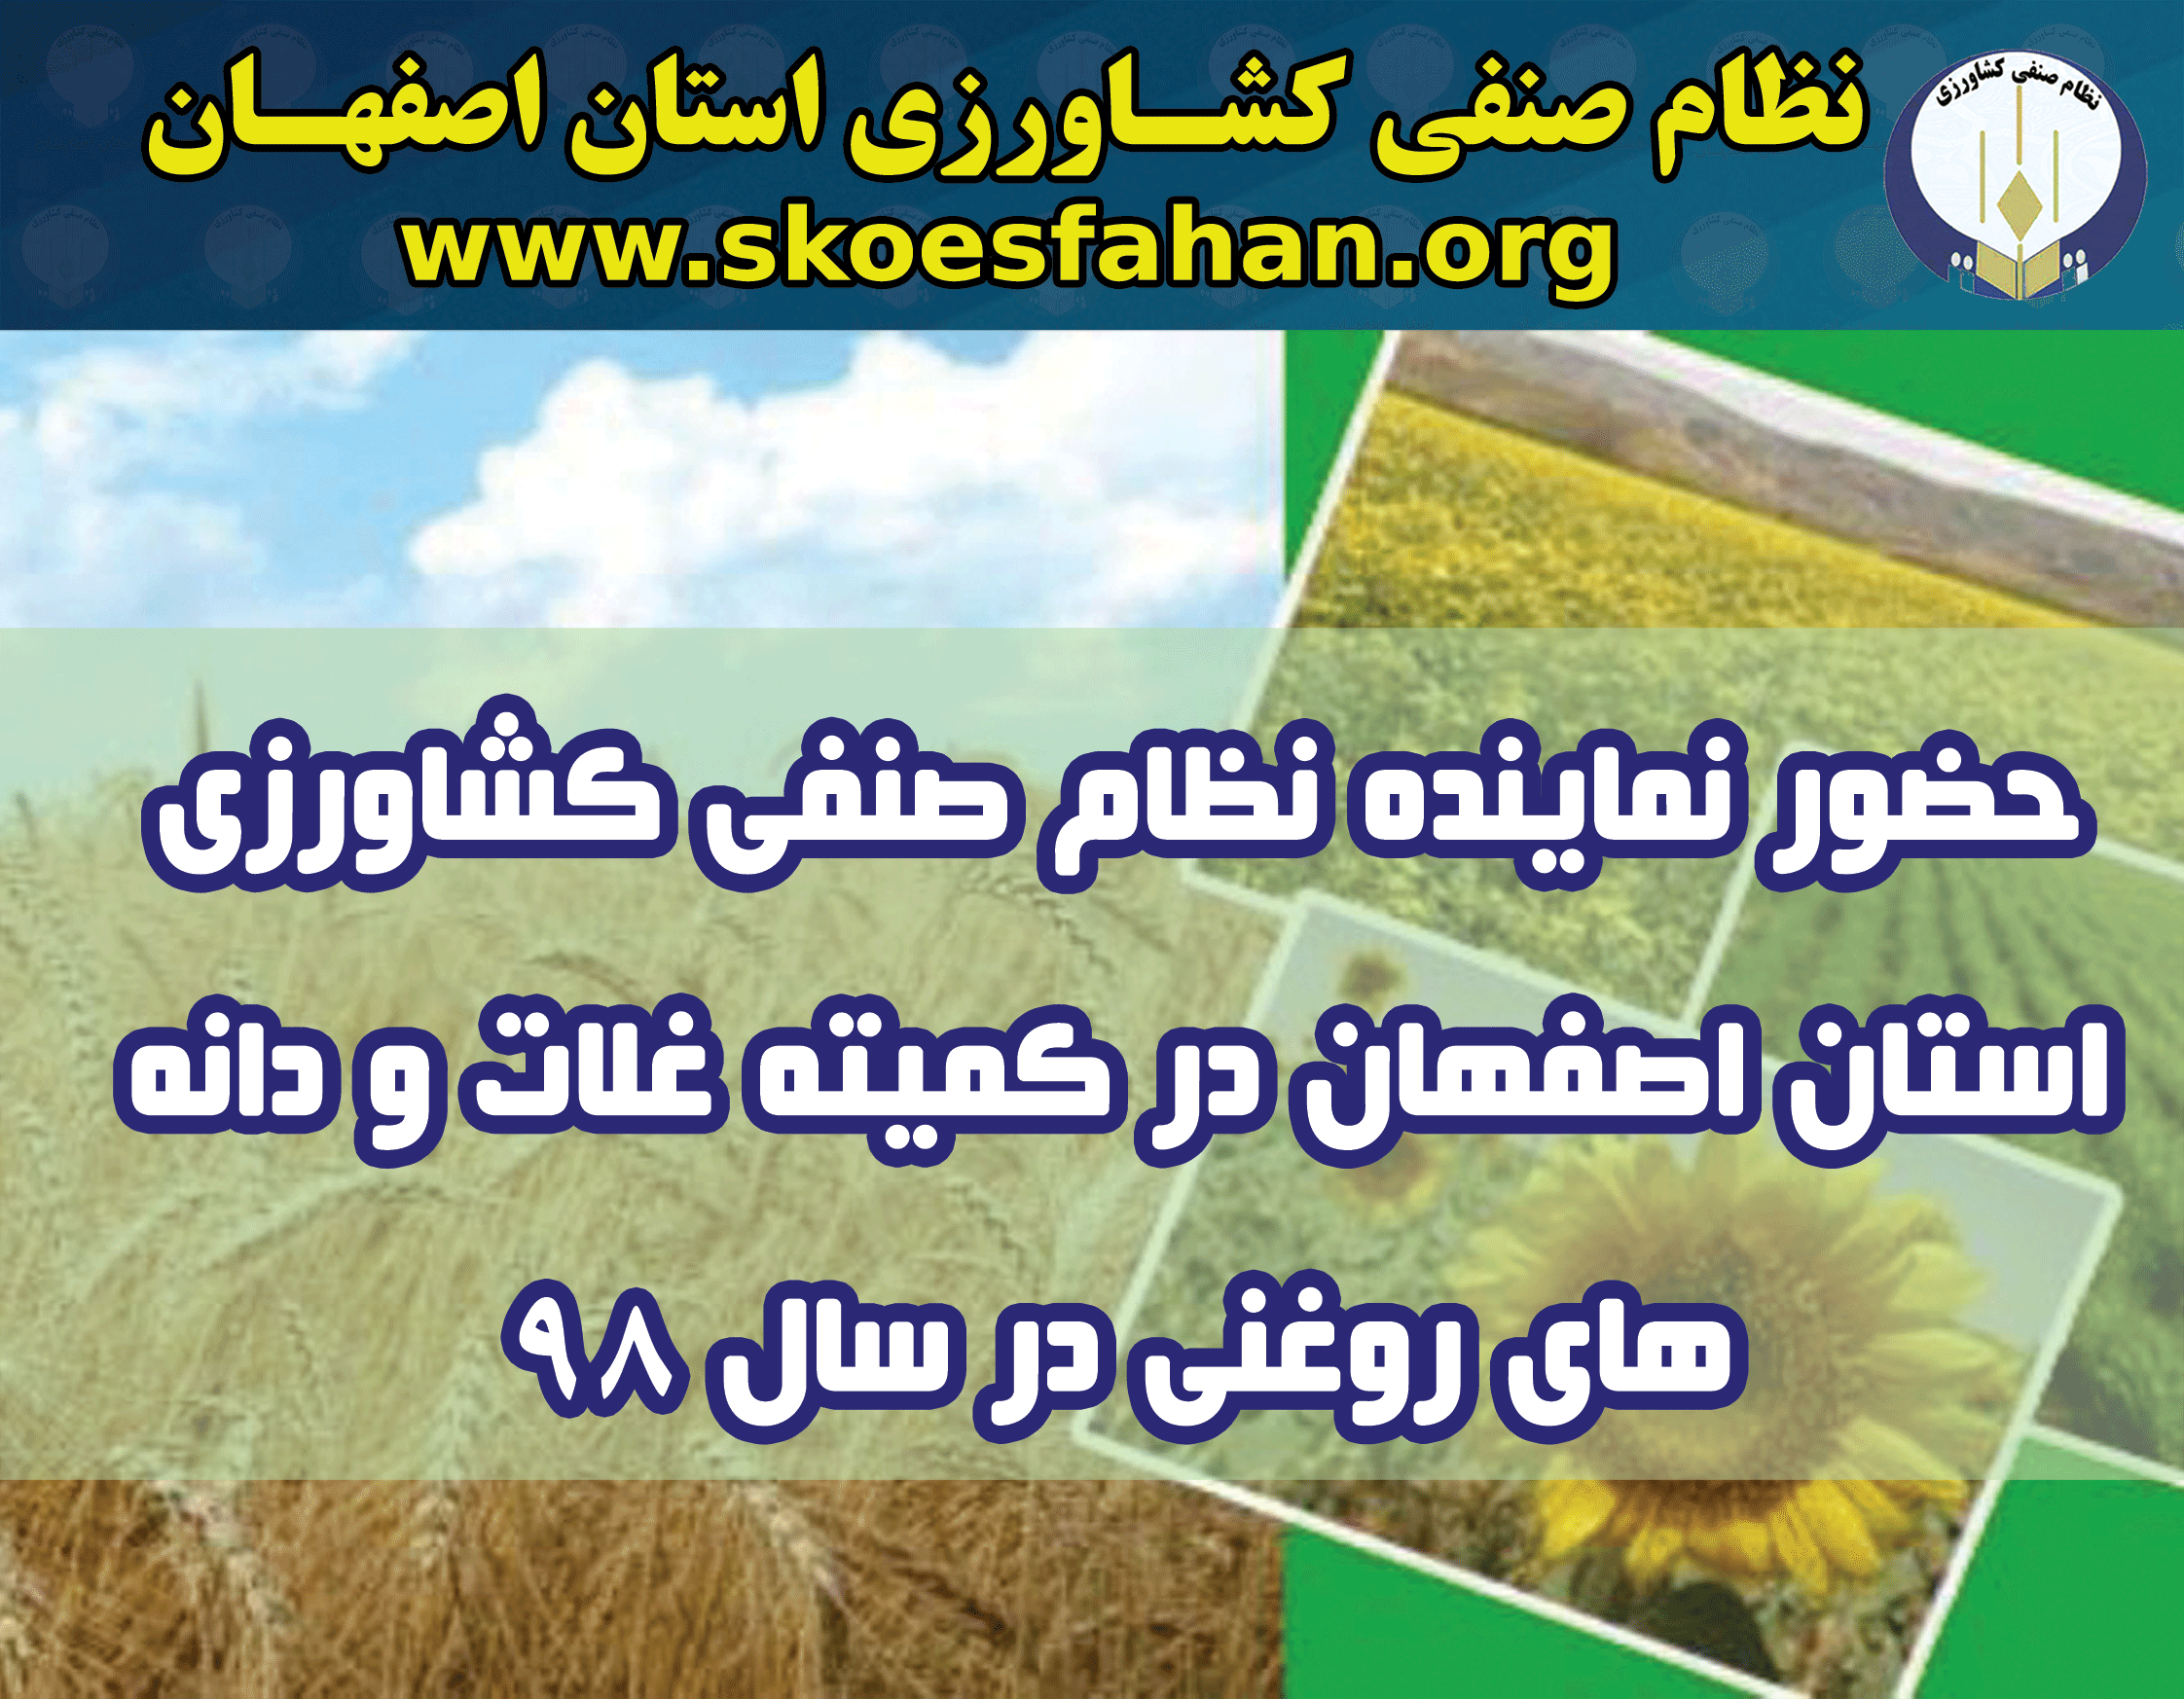 حضور نماینده نظام صنفی کشاورزی استان اصفهان در کمیته غلات و دانه های روغنی سال ۱۳۹۸